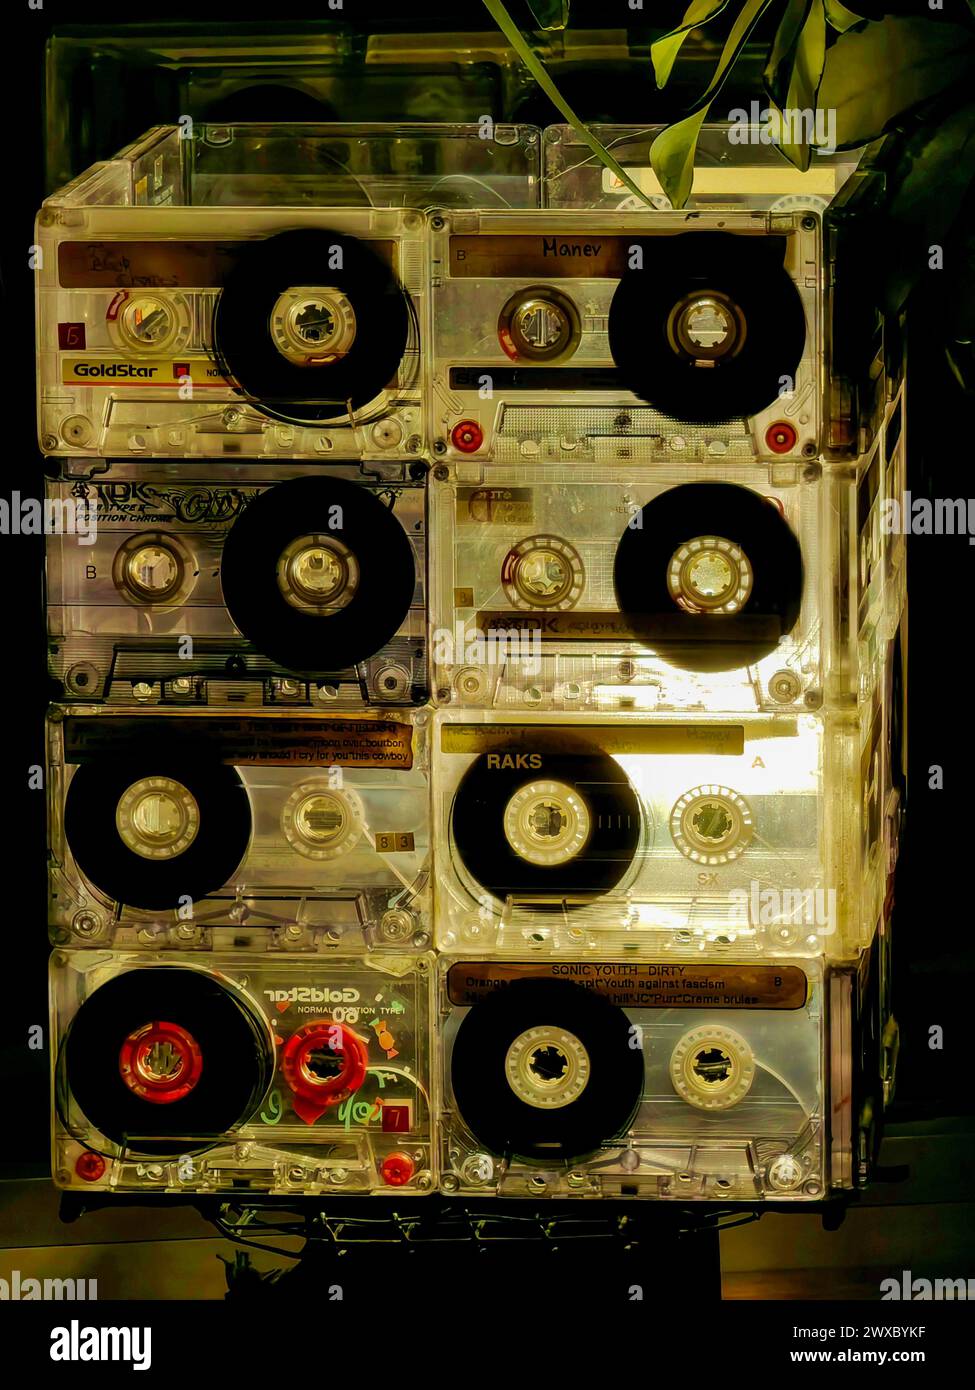 Rythmes rétro. lampe de cassettes de démonstration. Décoration inspirée de la musique. 3,29. 2024 Shtip Macédoine Banque D'Images